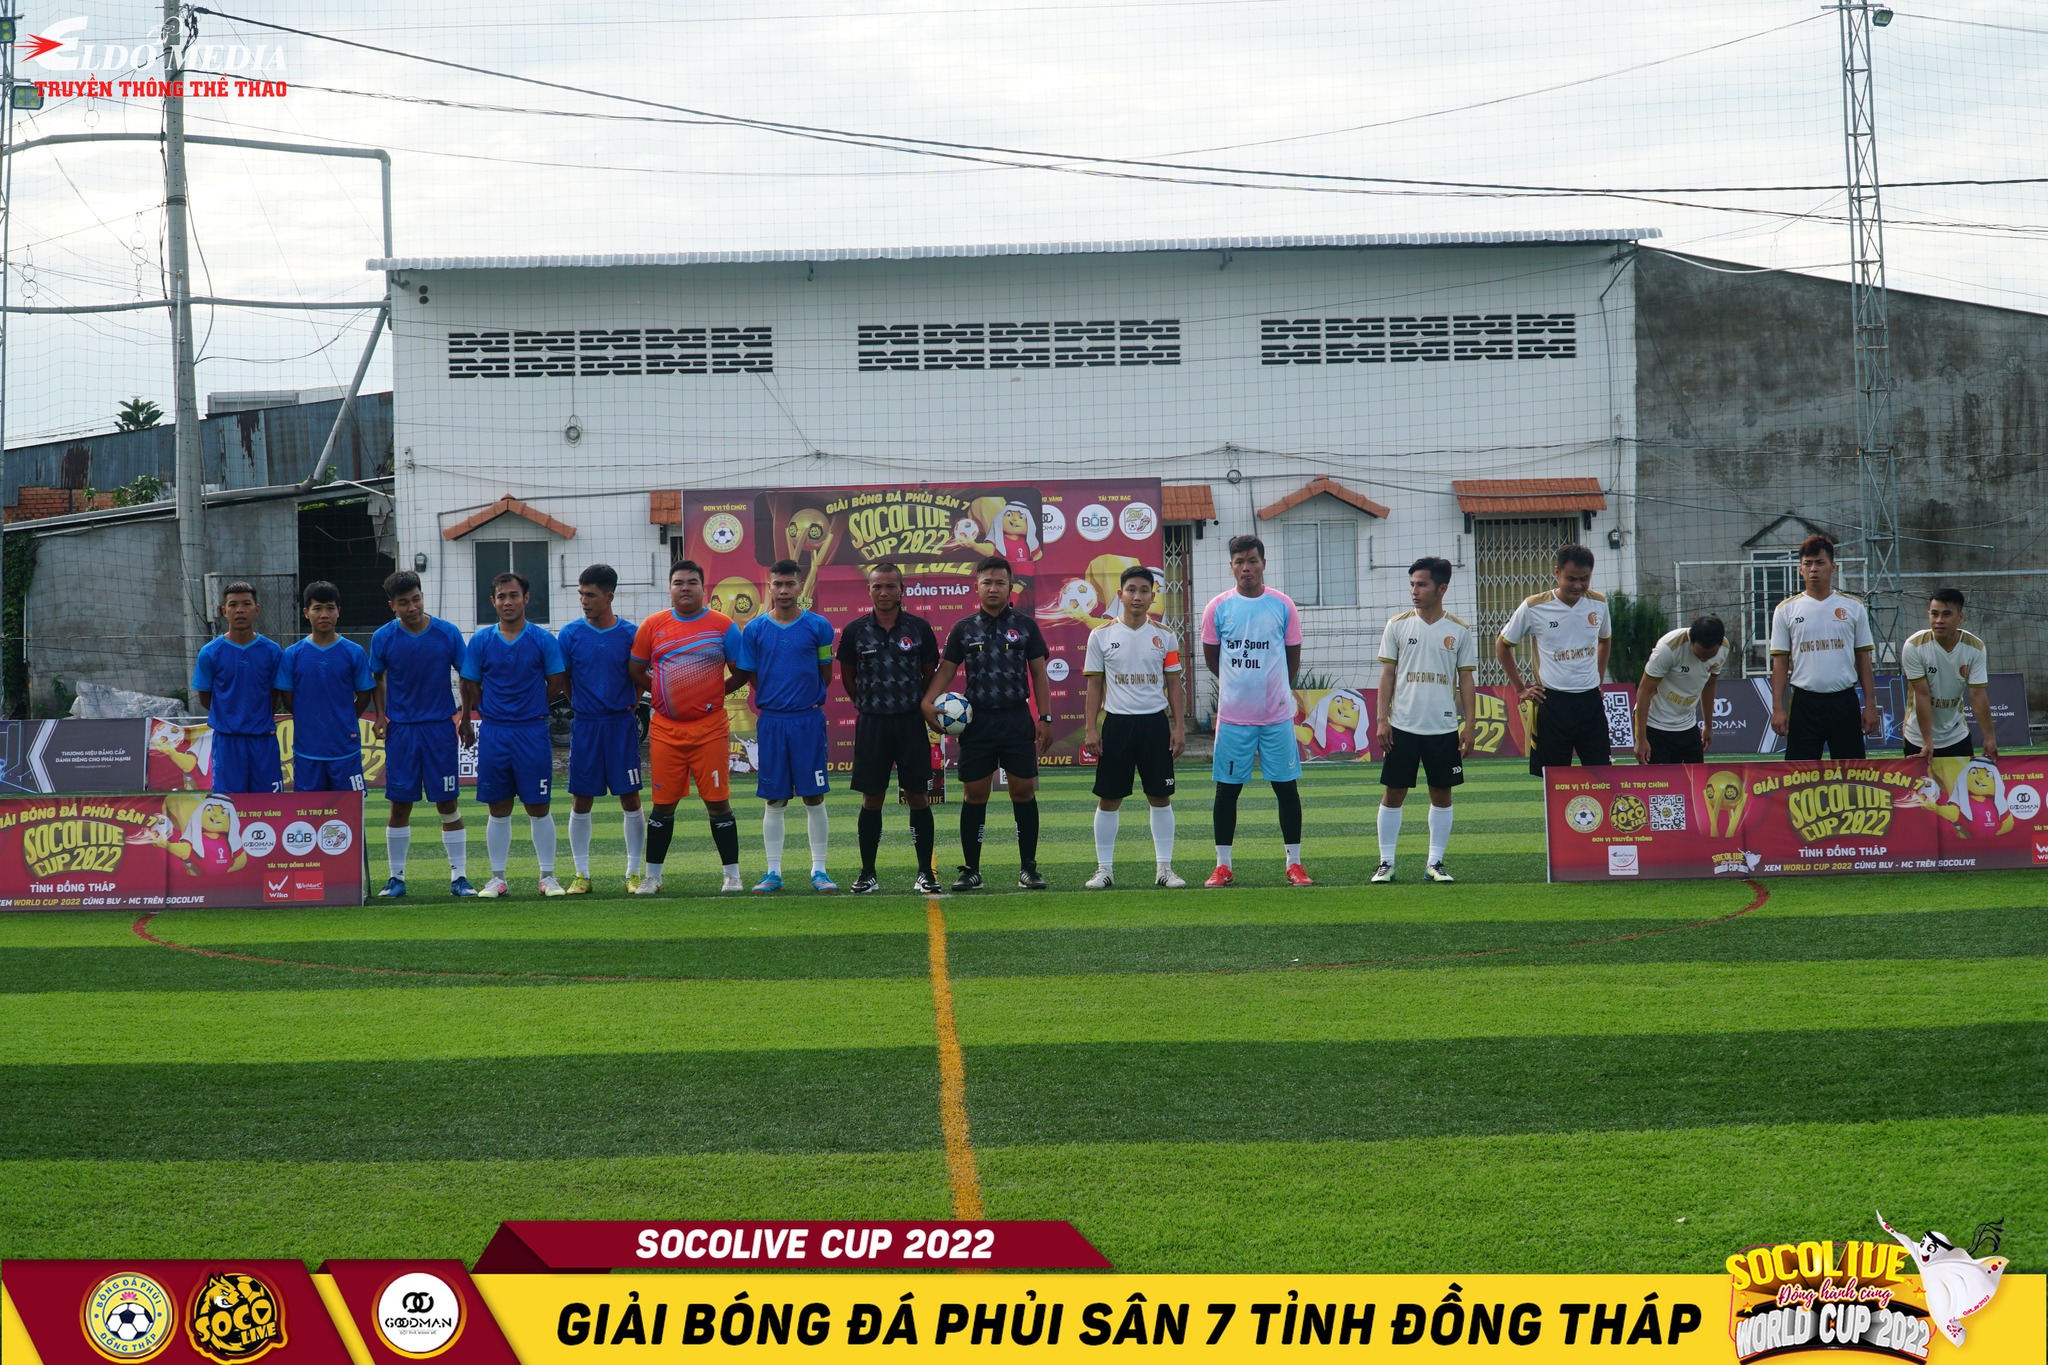 CĐT Đồng Tháp 1-1 Bảo Hiểm Xuân Thành tại V2 giải bóng đá phong trào Đồng Tháp Socolive Cup